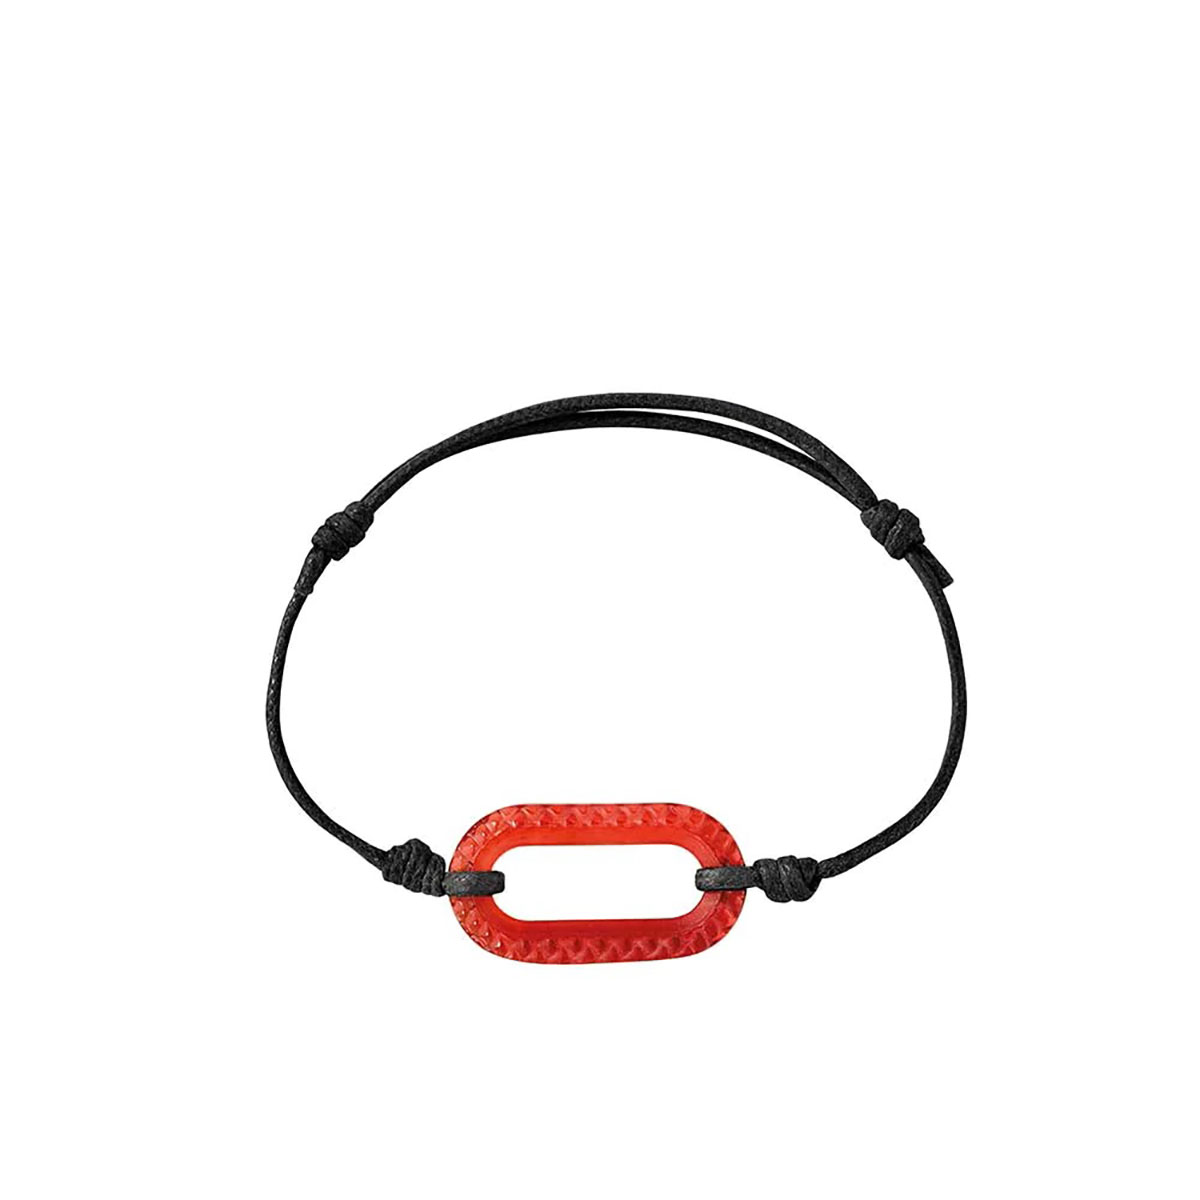 Lalique Empreinte Animale Bracelet Cord Red L